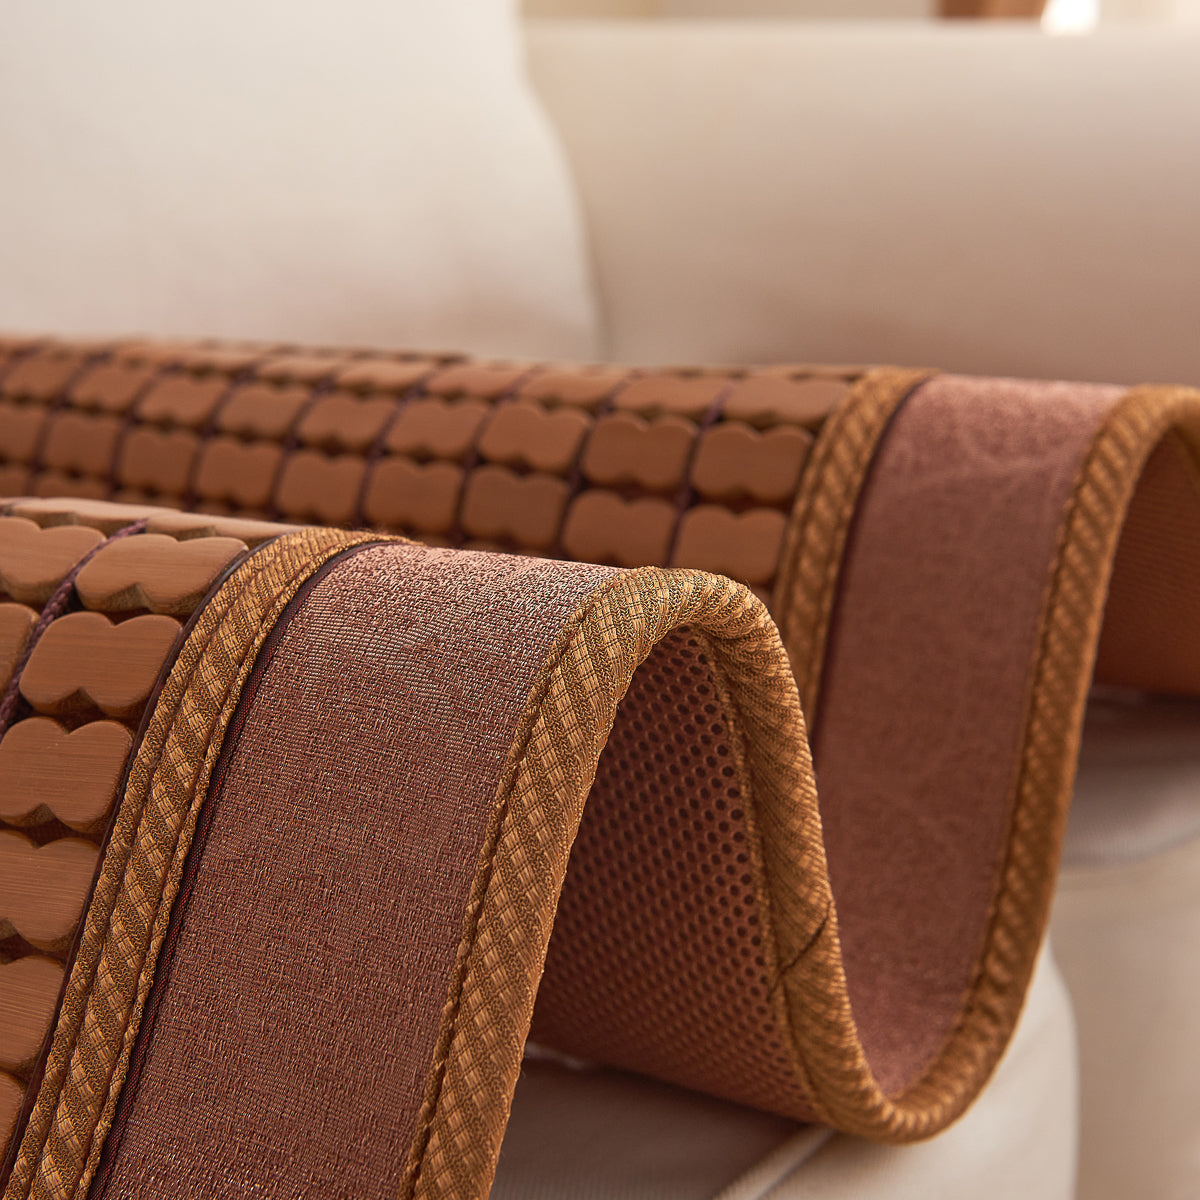 碳化麻将沙发垫– Qbedding